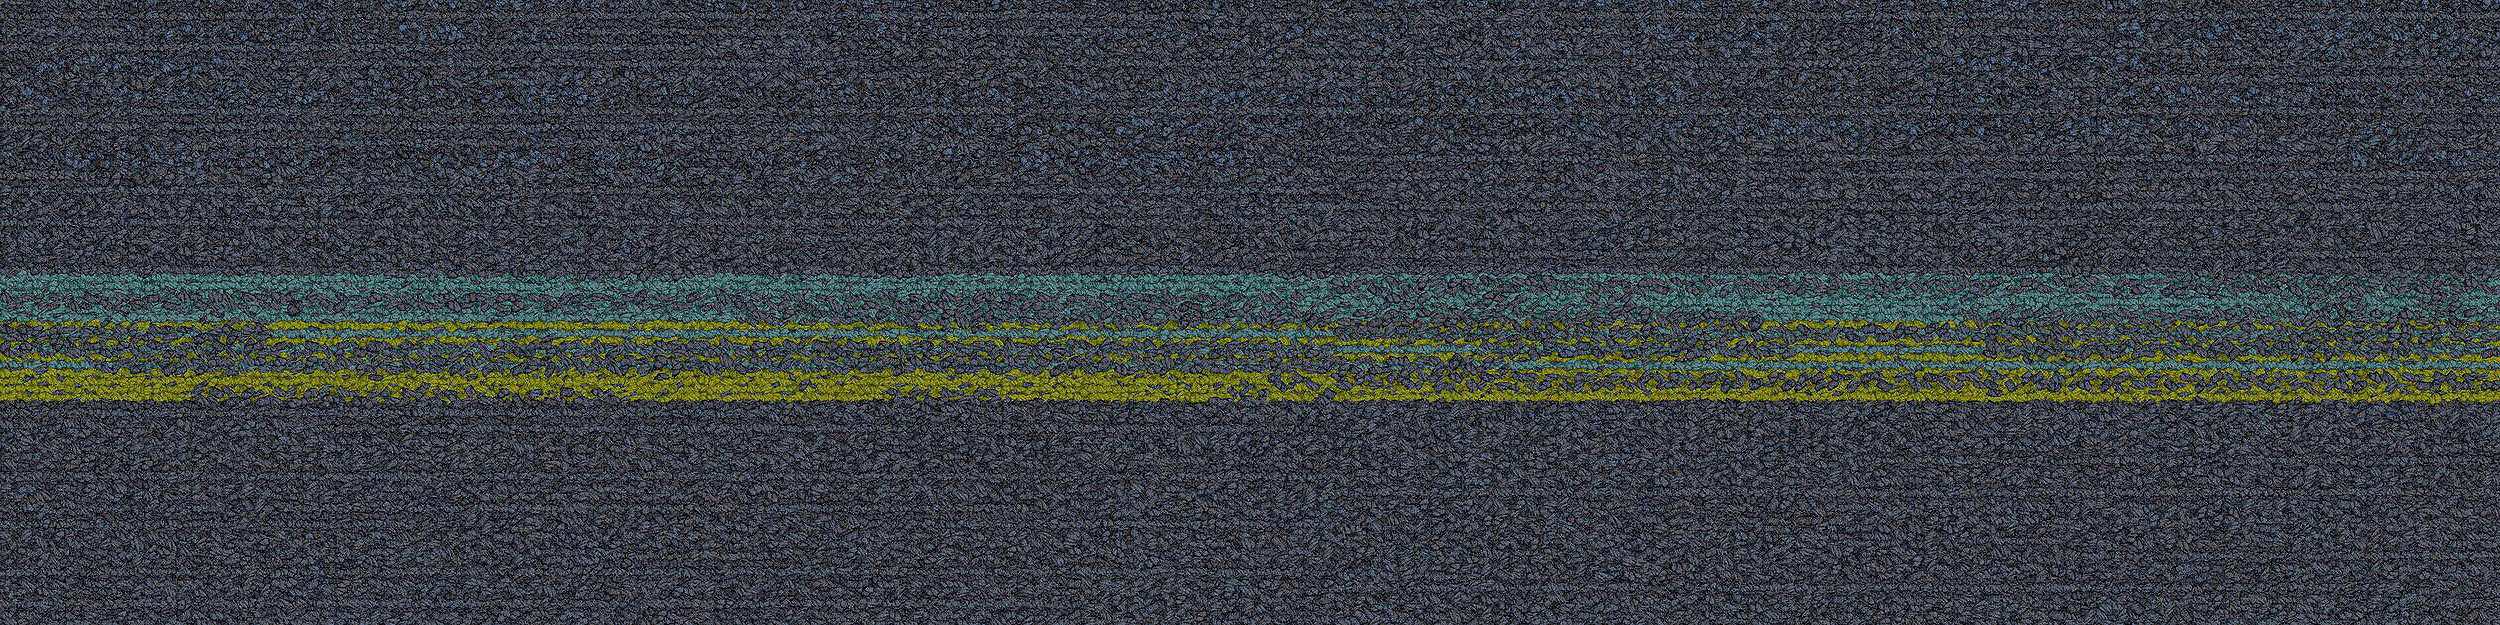 Ground Waves Carpet Tile in Cobalt/Colors image number 12